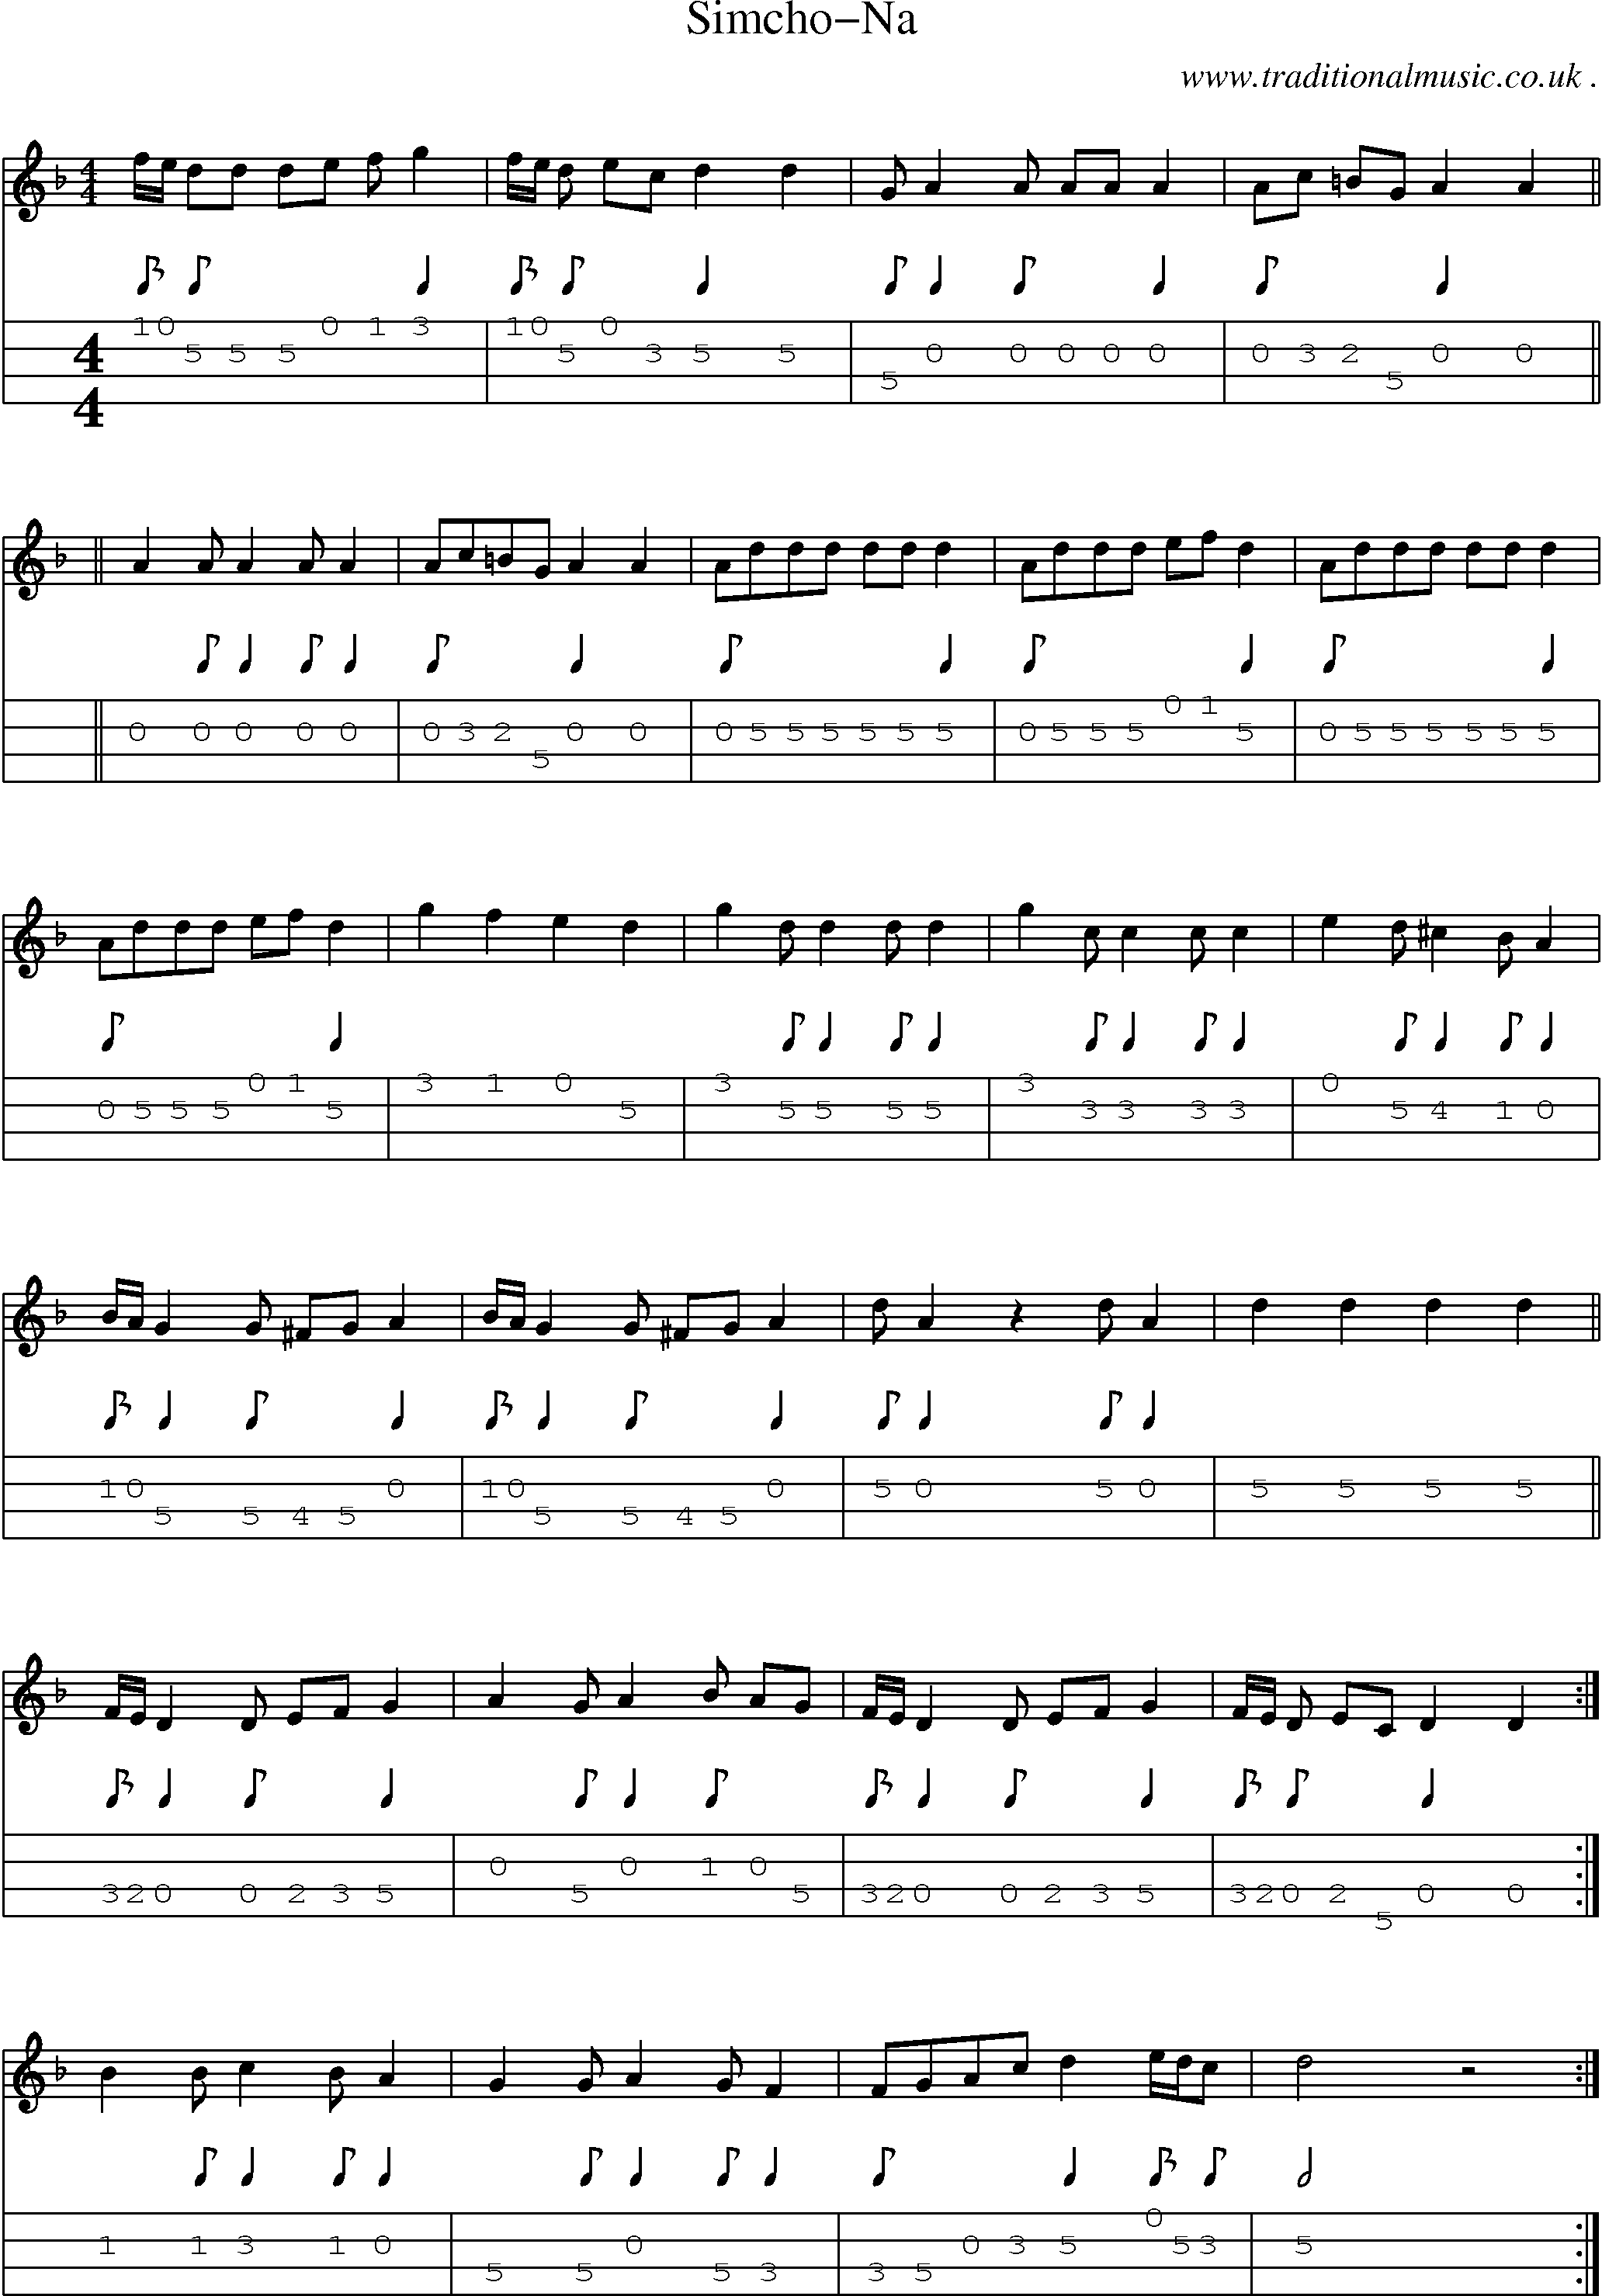 Sheet-Music and Mandolin Tabs for Simcho-na